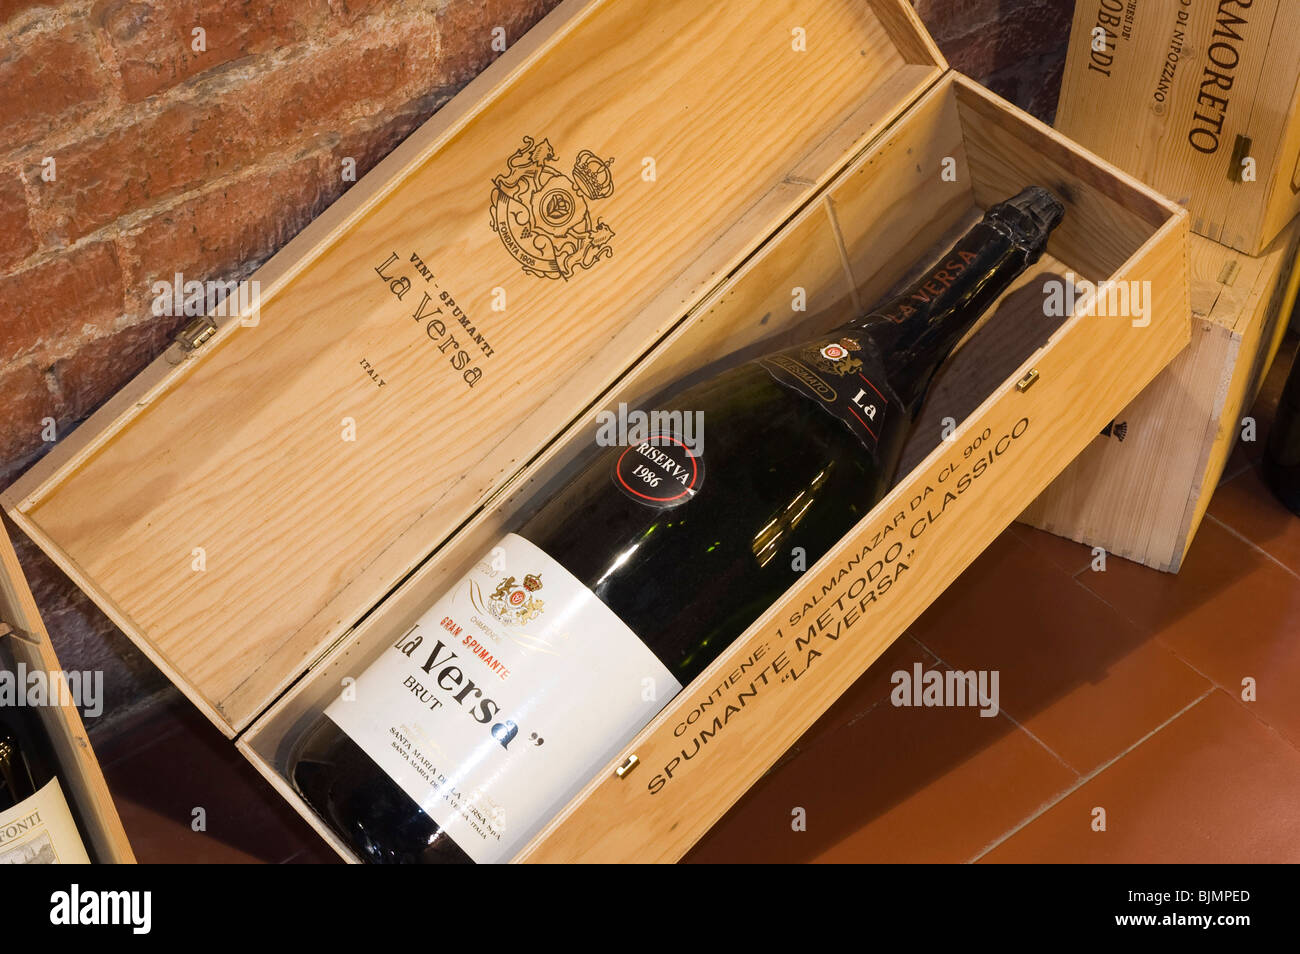 Riserva Champagne in a wooden box, Enoteca Italiana wine shop, Siena, Tuscany, Italy, Europe Stock Photo